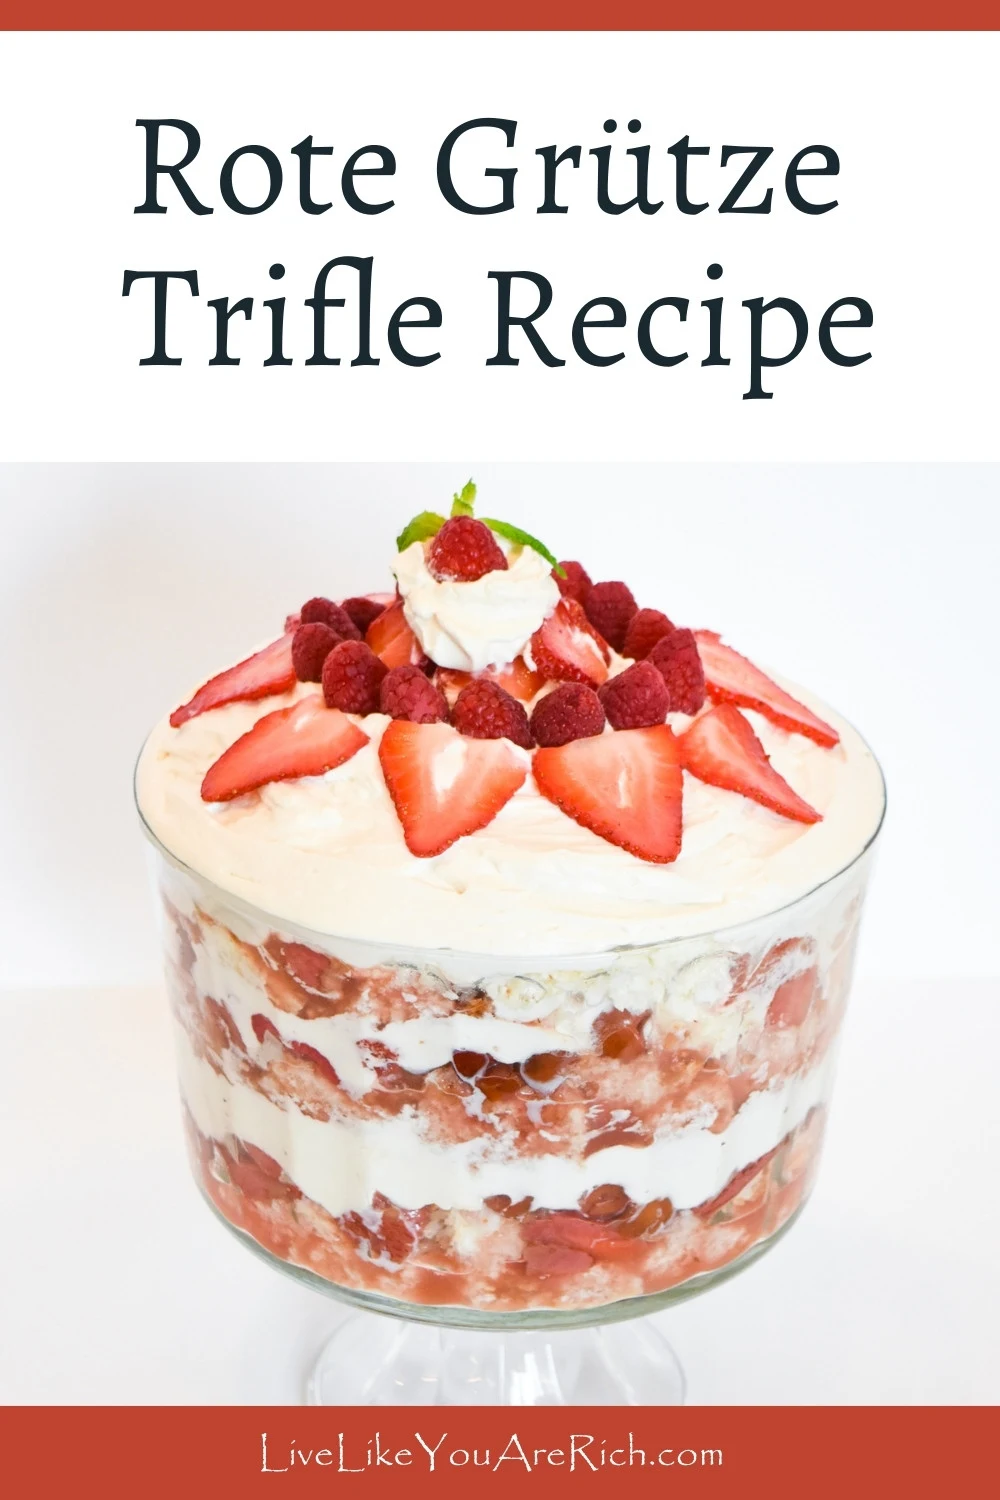 Rote Grütze Trifle Recipe.